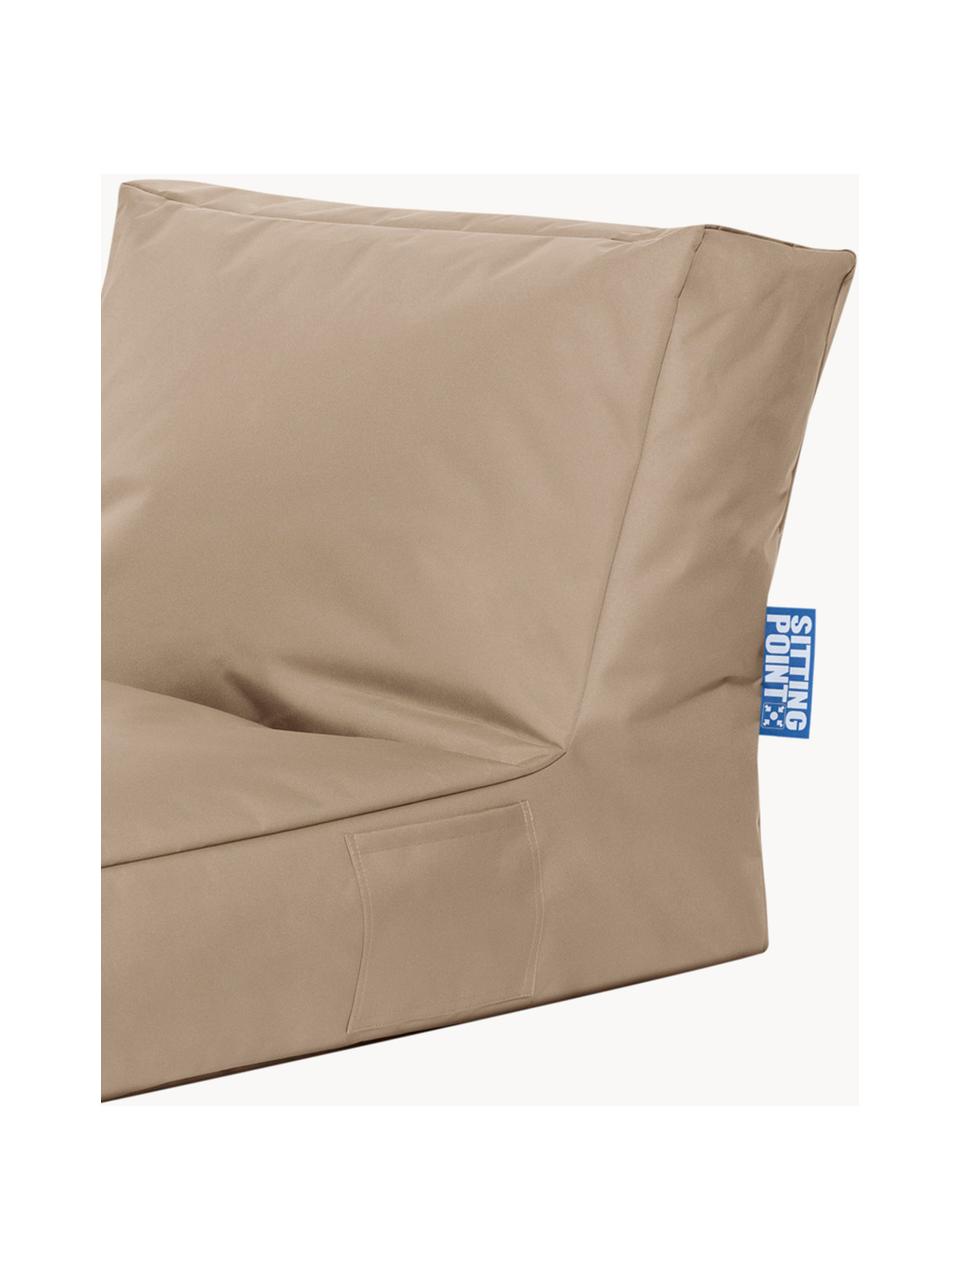 Outdoor loungefauteuil Pop Up met ligfunctie, Geweven stof beige, B 70 x D 90 cm